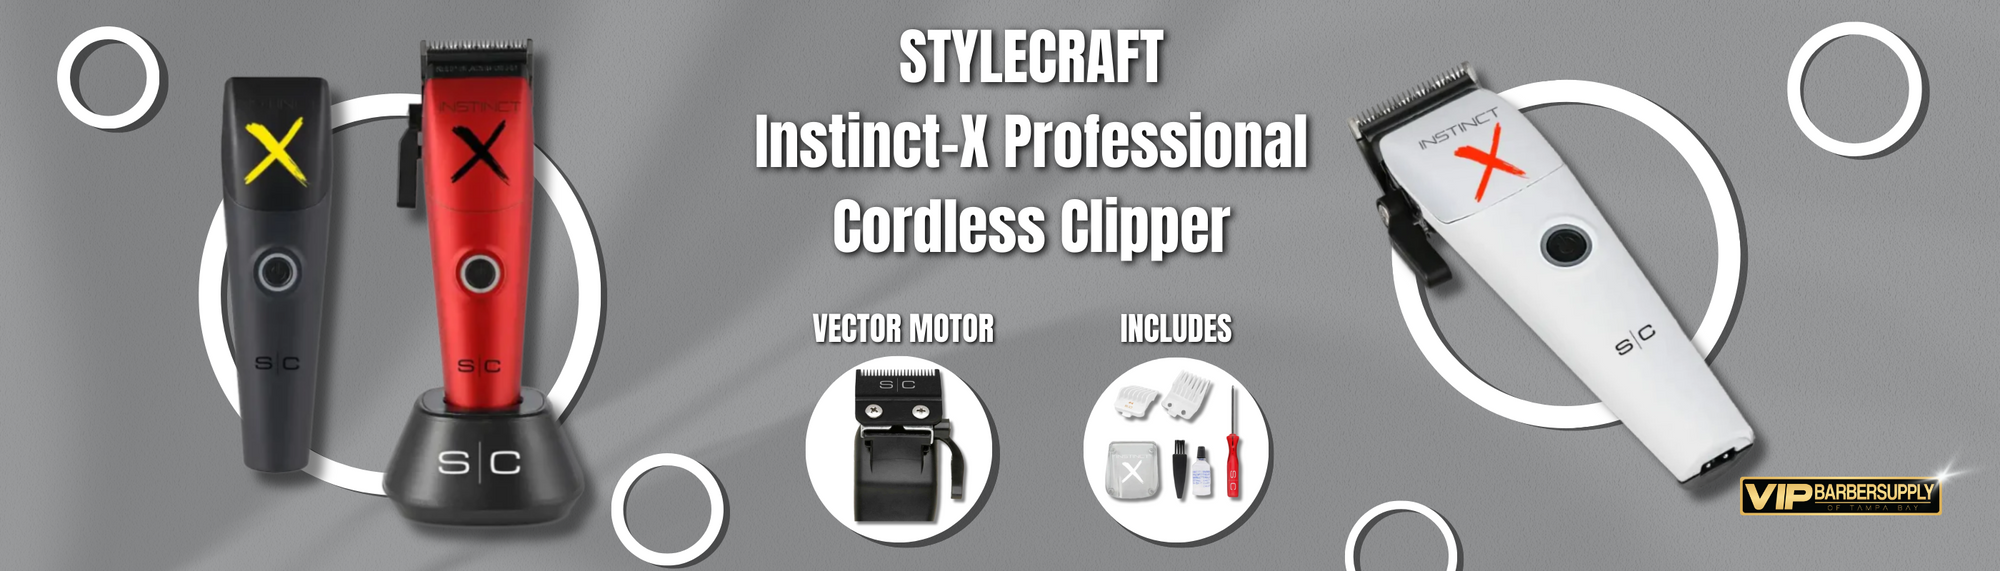 Stylecraft Instinct X Clipper